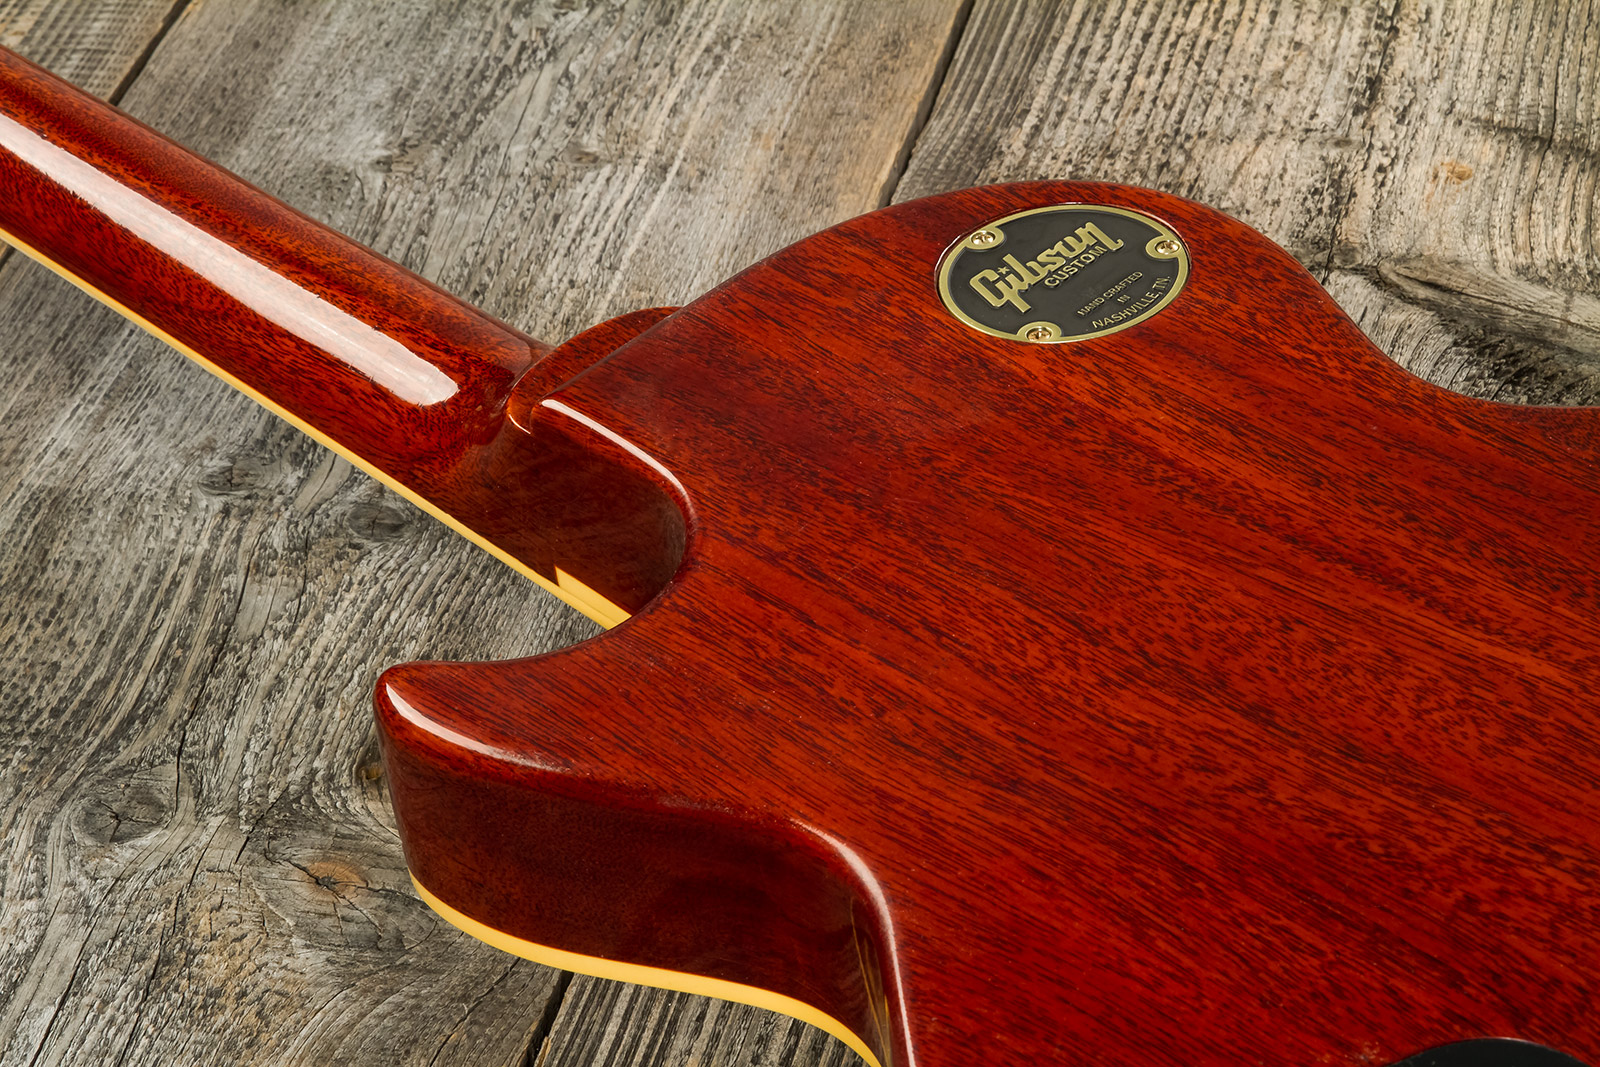 Gibson Custom Shop M2m Les Paul Standard 1959 Reissue 2h Ht Rw #932134 - Murphy Lab Ultra Light Aged Washed Cherry Burst - Guitare Électrique Single C